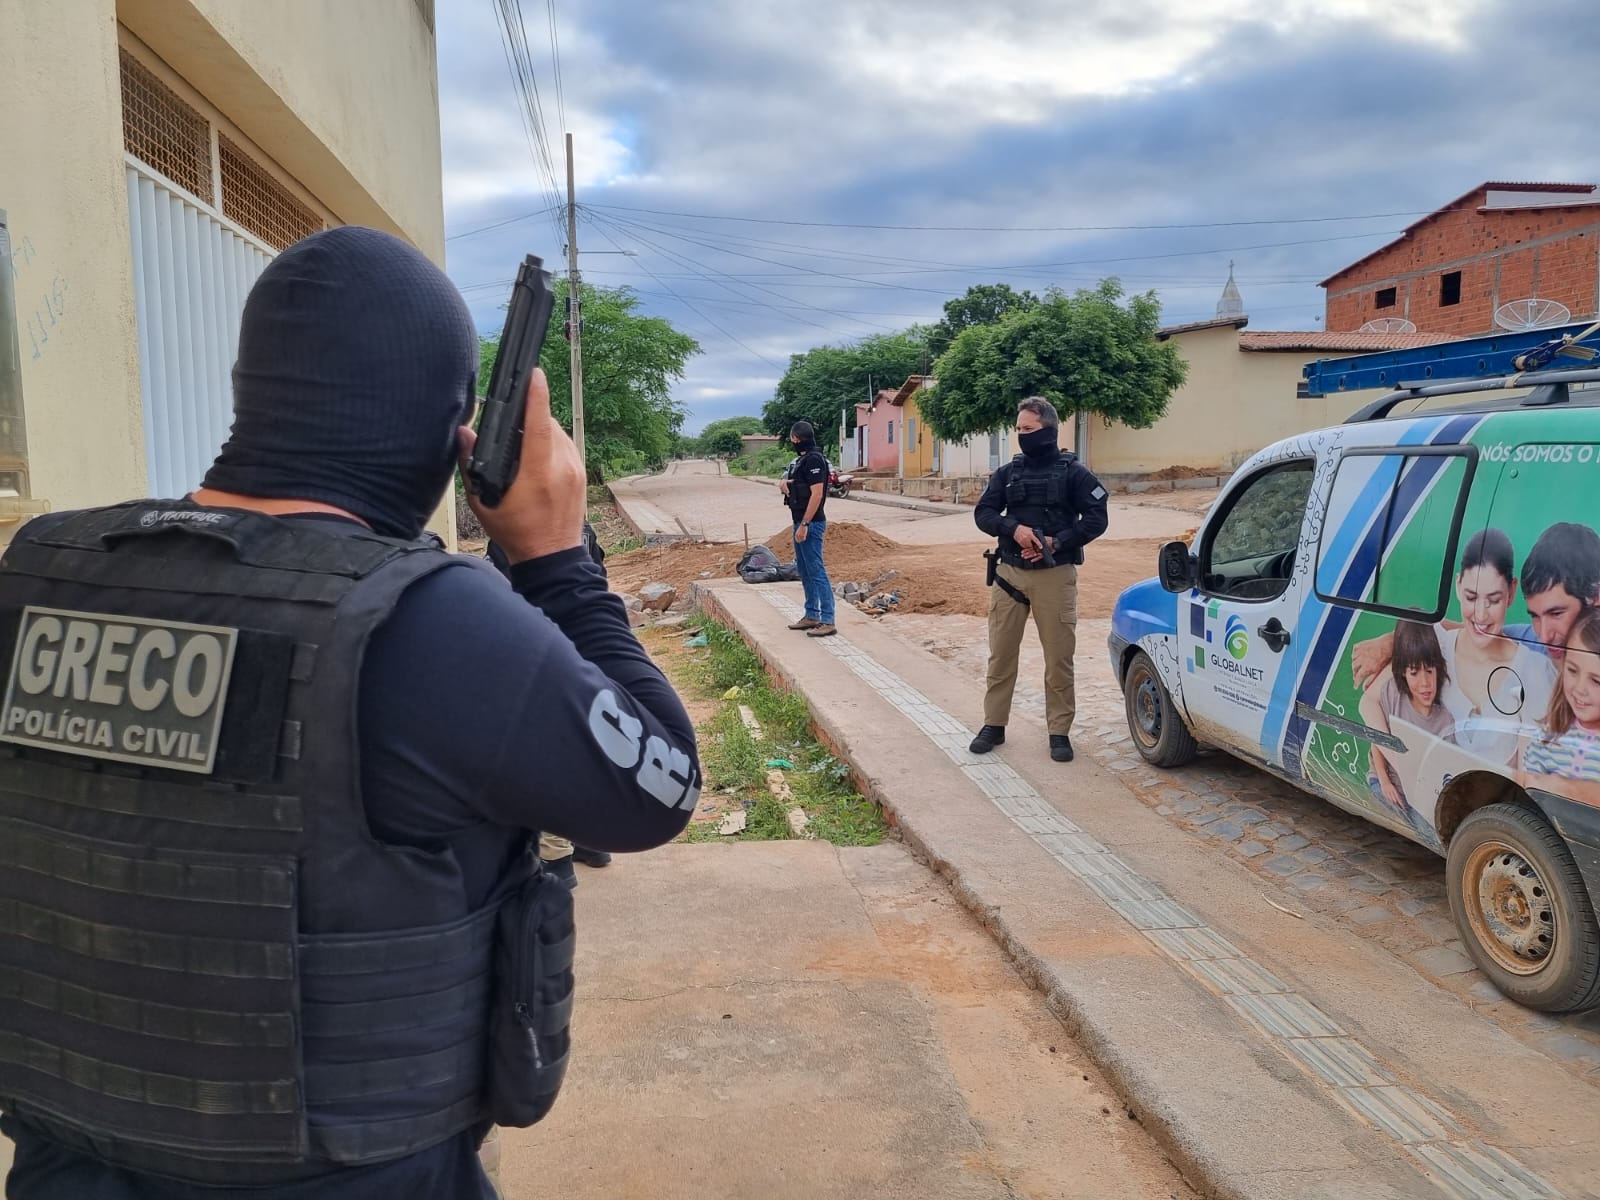 Proprietário de provedor de internet é preso com equipamentos furtados - Foto: Divulgação/Greco